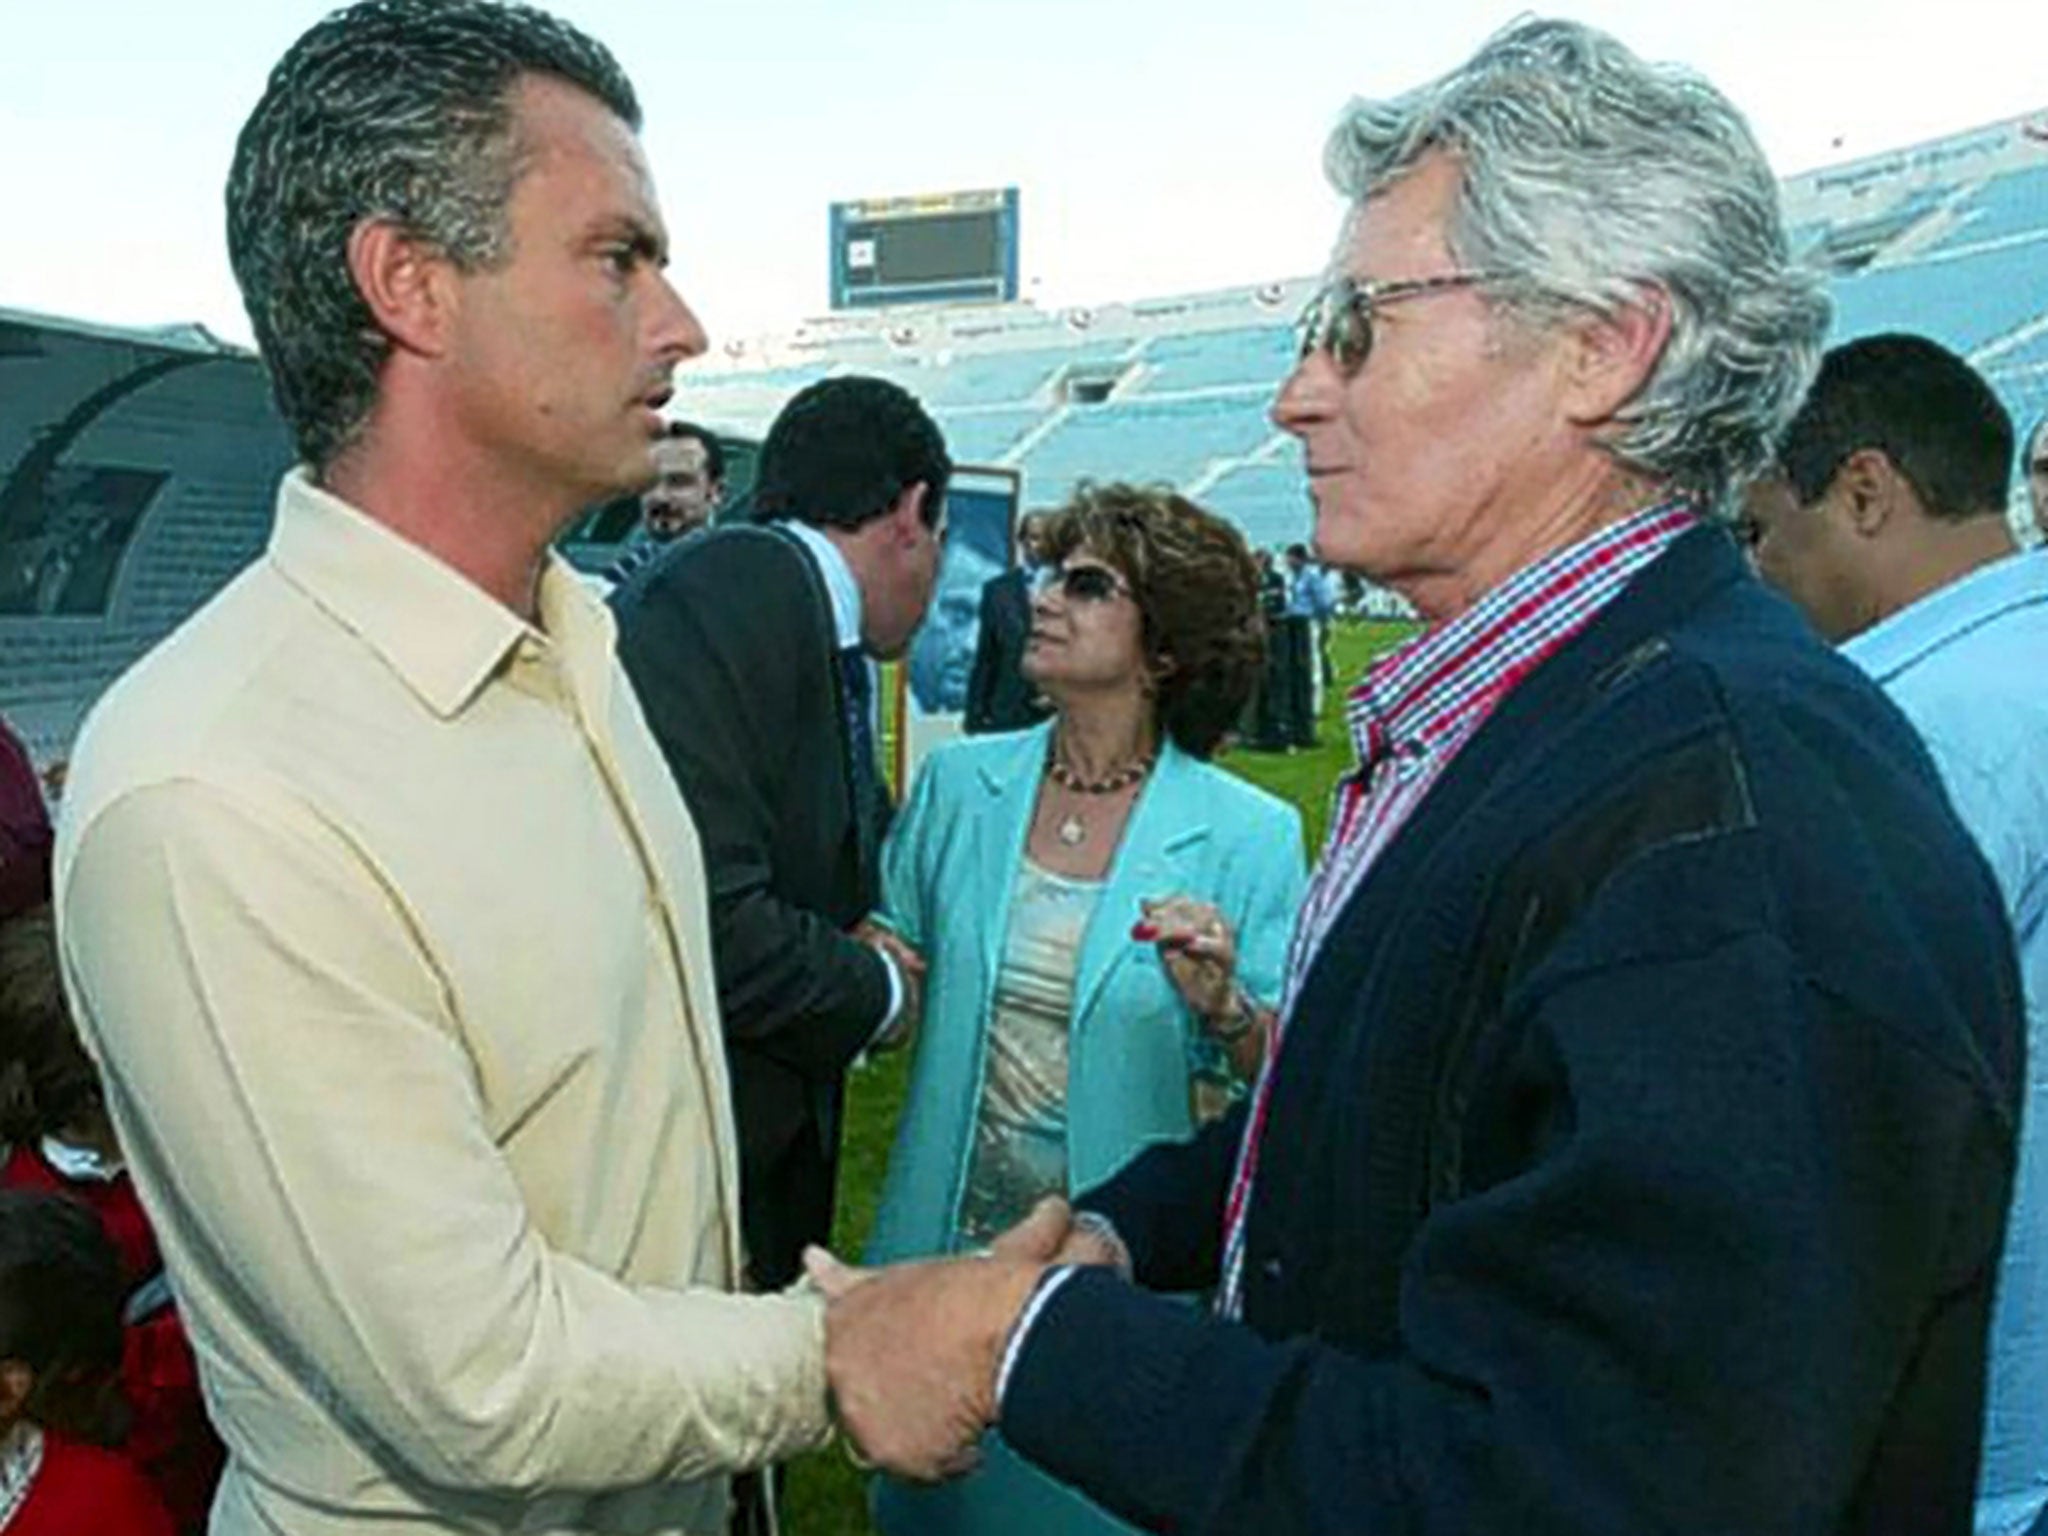 Jose Mourinho shakes hands with his father, Mourinho Felix, during the former’s days as Porto coach